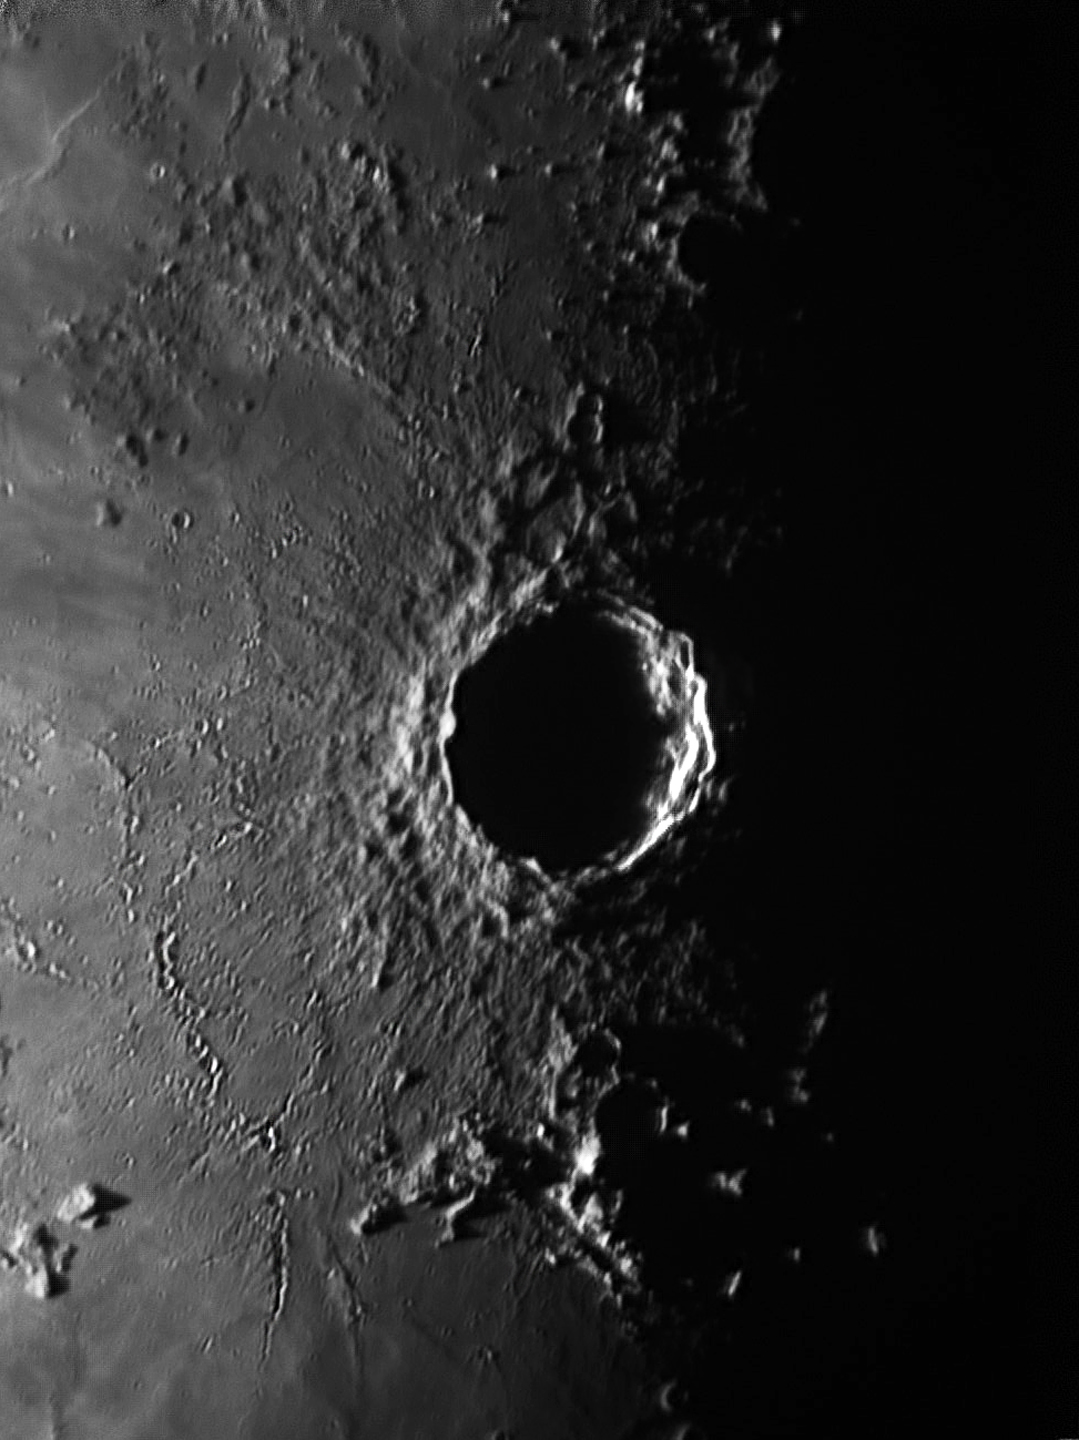 Copernicus 22 Jan 2021. C8. f20. 520 frames by Ken Kennedy